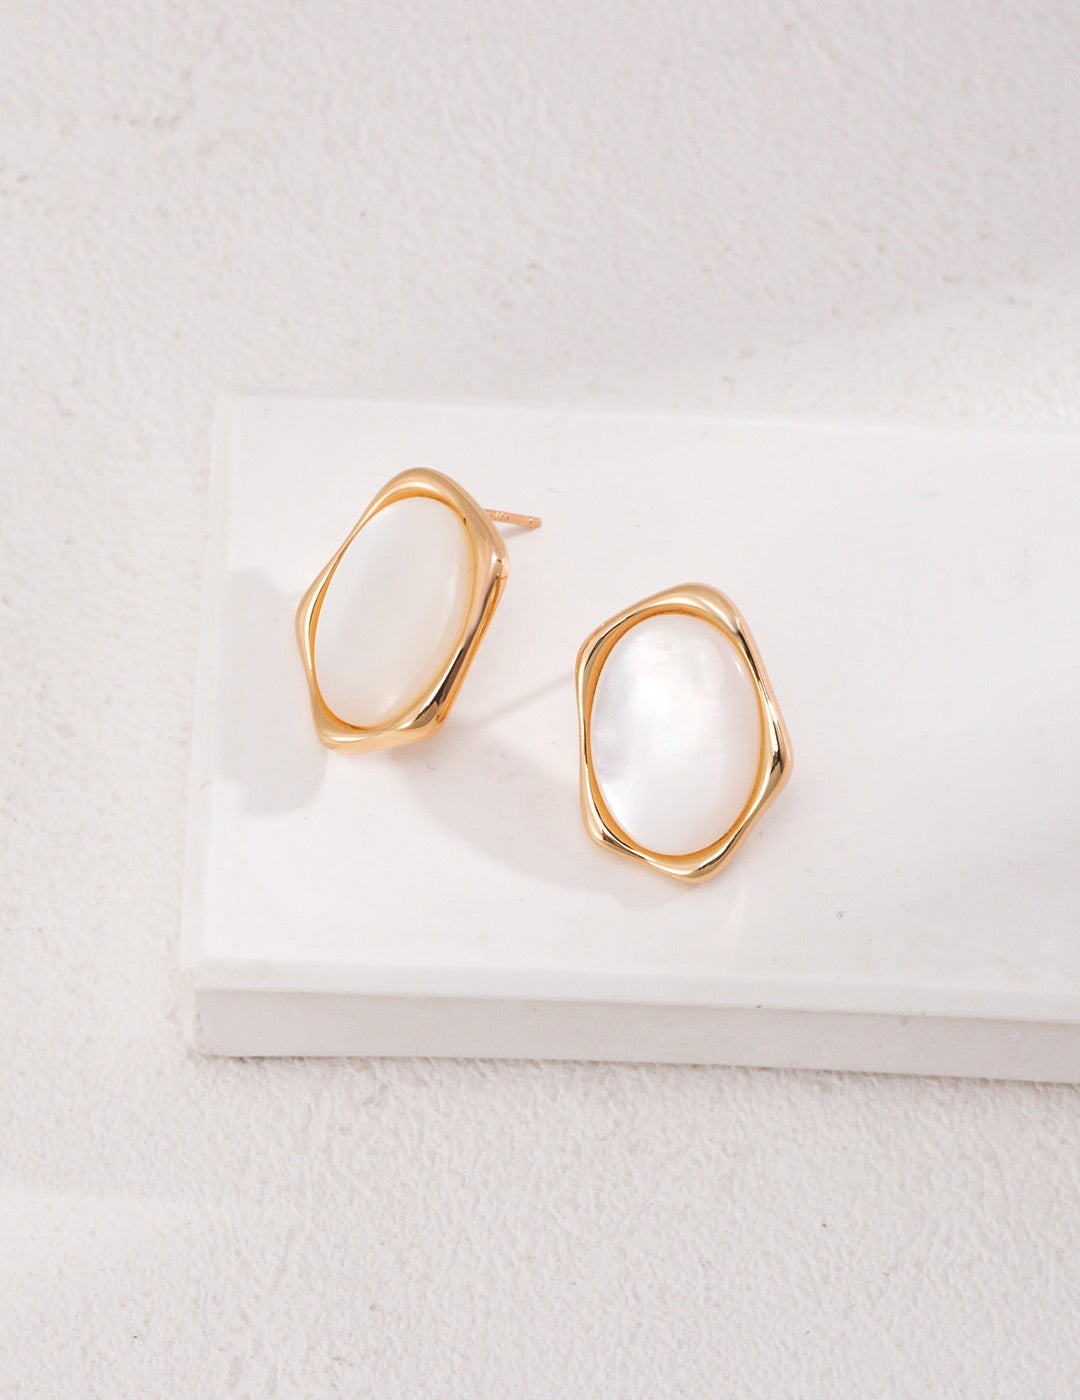 Mother of Pearl Flower Earrings | Pearl earrings | Gold earrings | mother of pearl stud earrings silver